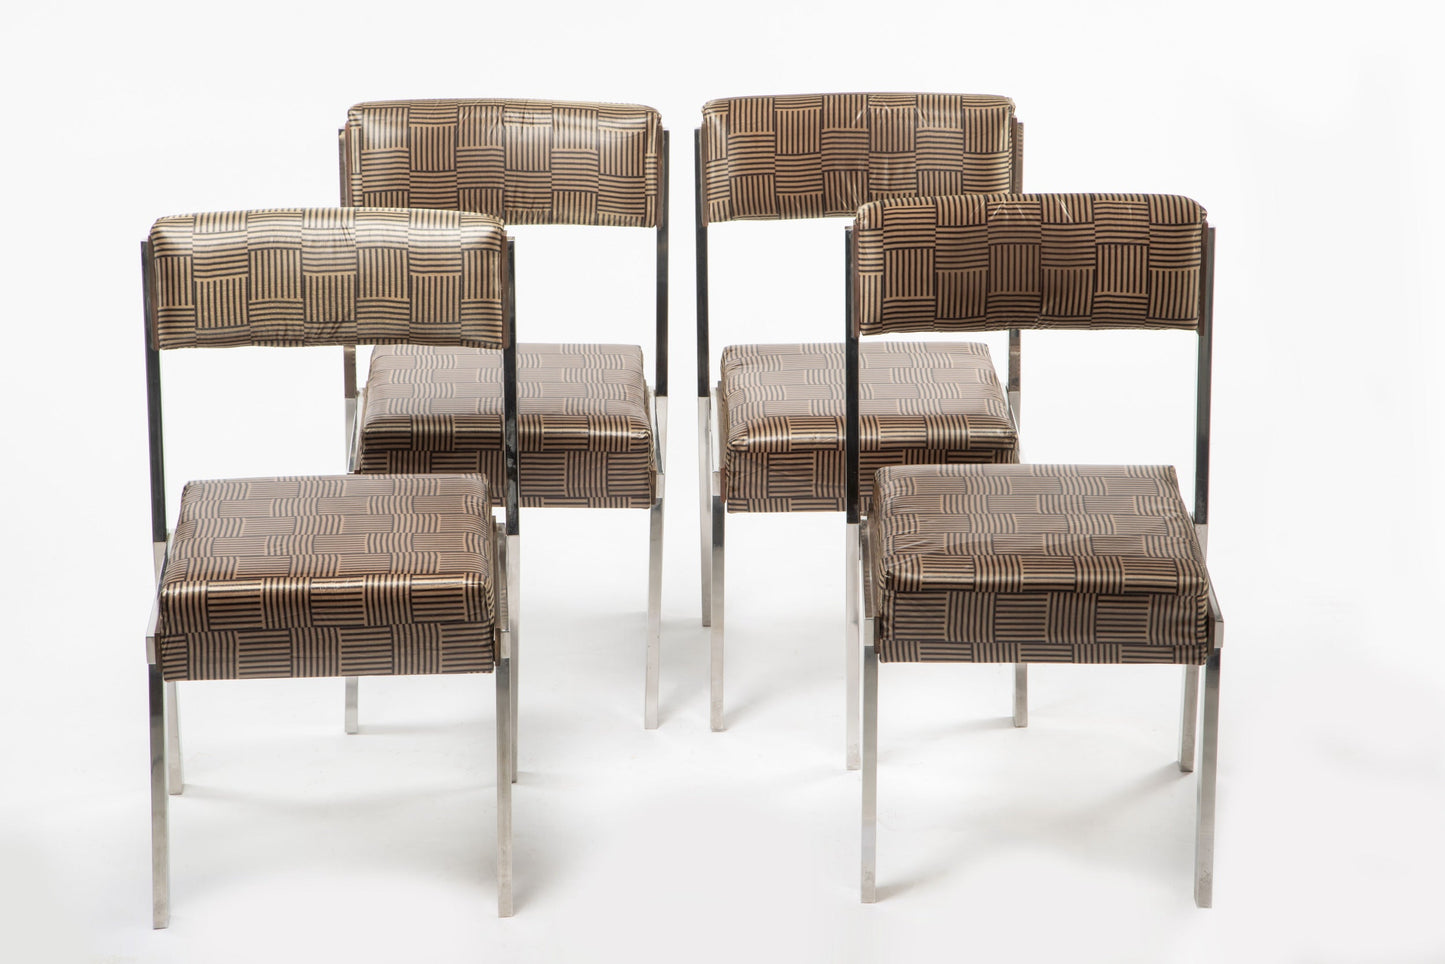 Four 70s steel chairs reinterpreted triplef